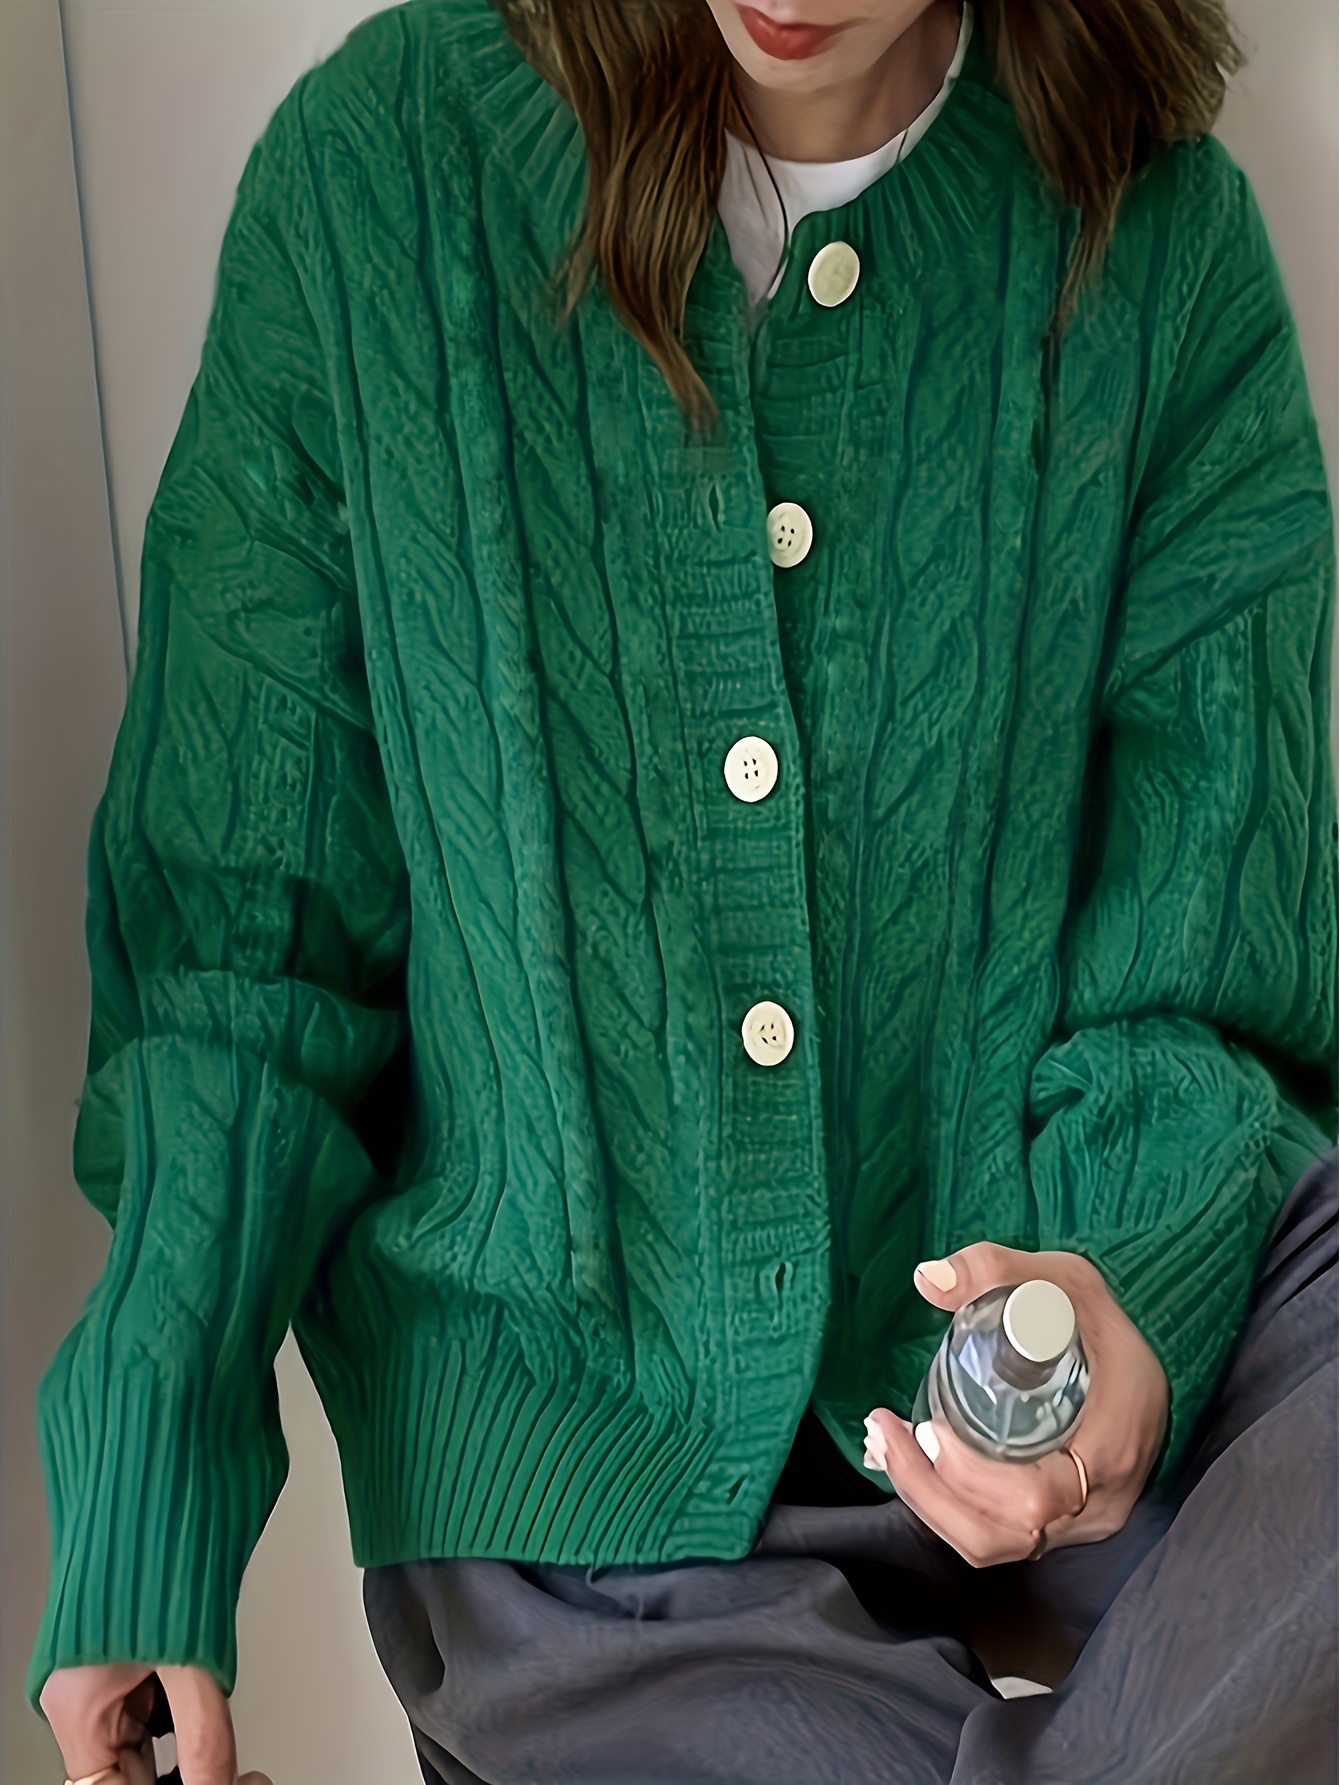 Buy Full Sleeves Bottle Green Knit Shirt